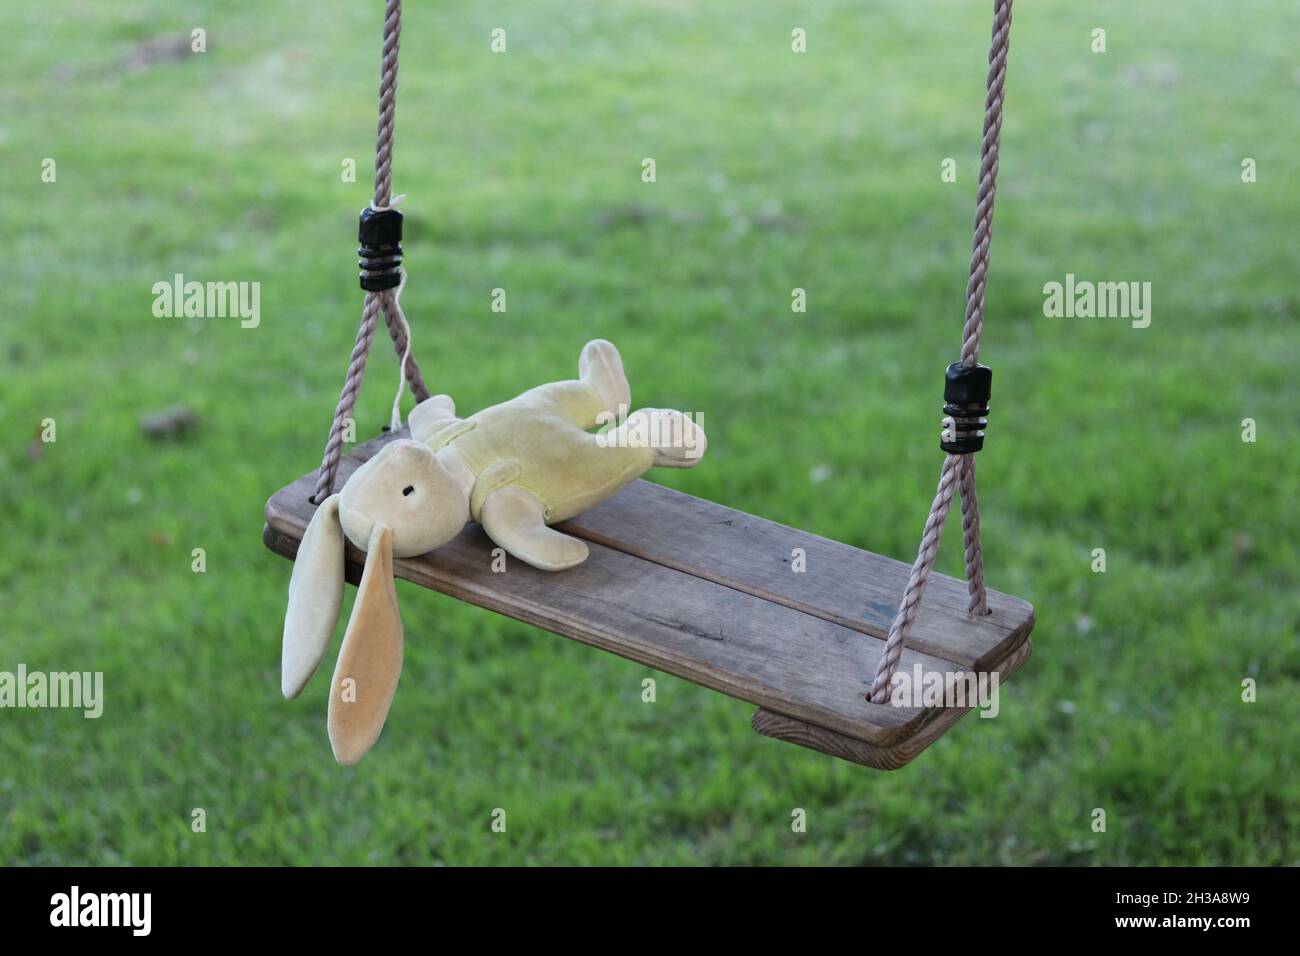 Gefüllter Hase auf Schaukel liegend, Konzept für verlorenes oder vermisstes Kind Stockfoto